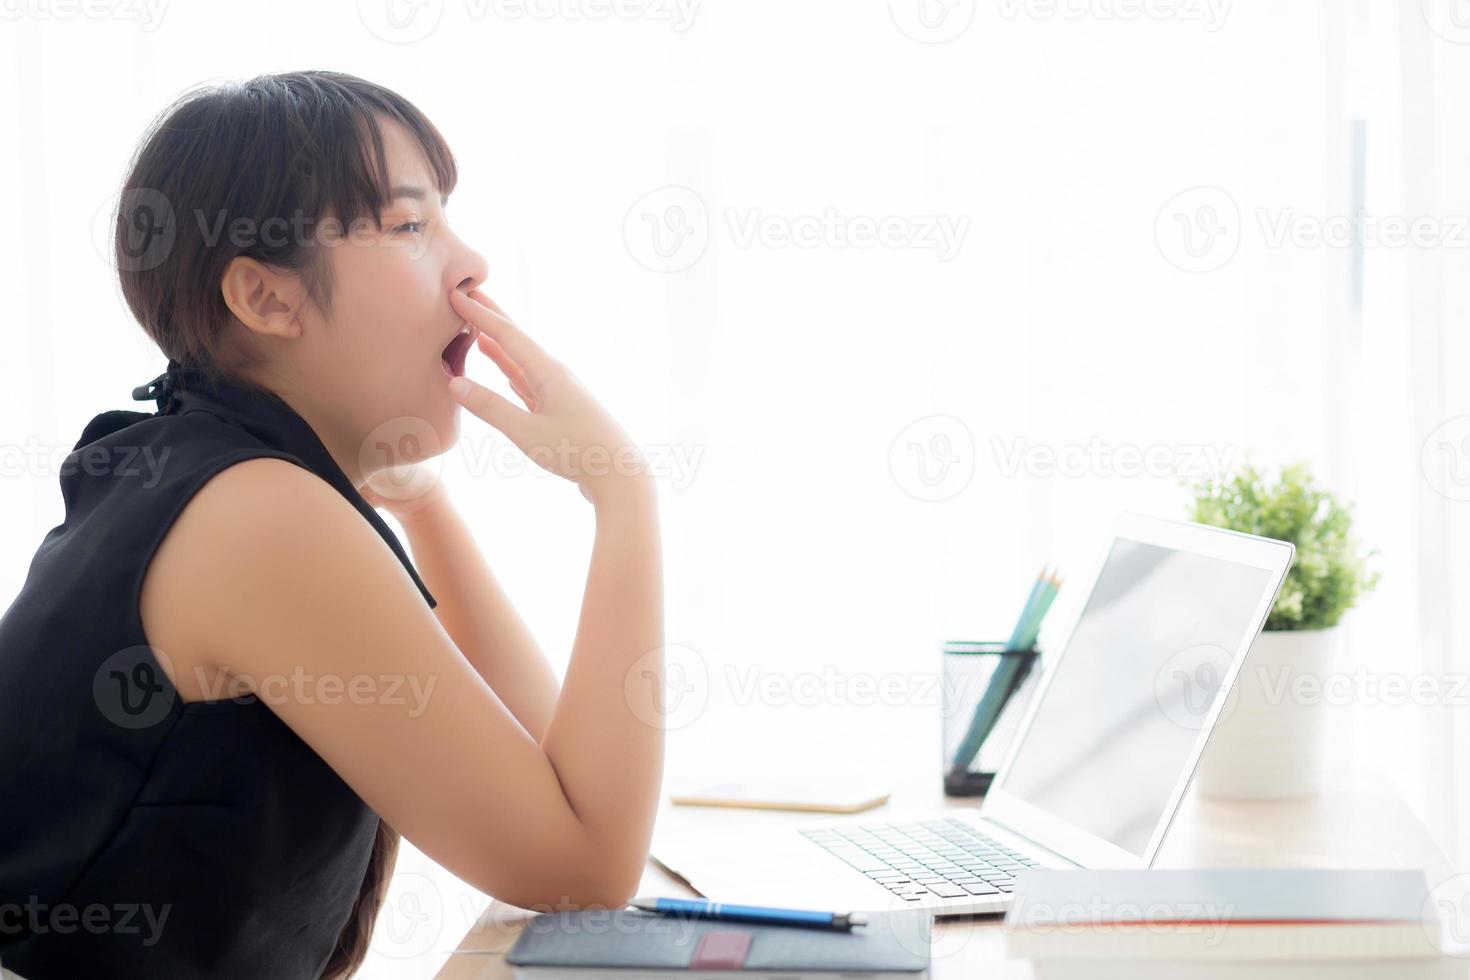 bela jovem mulher asiática freelance trabalhando entediado e cansado no computador portátil no escritório, menina preguiçosa com sono e bocejando no notebook, secretária feminina com exausto, conceito de negócio. foto